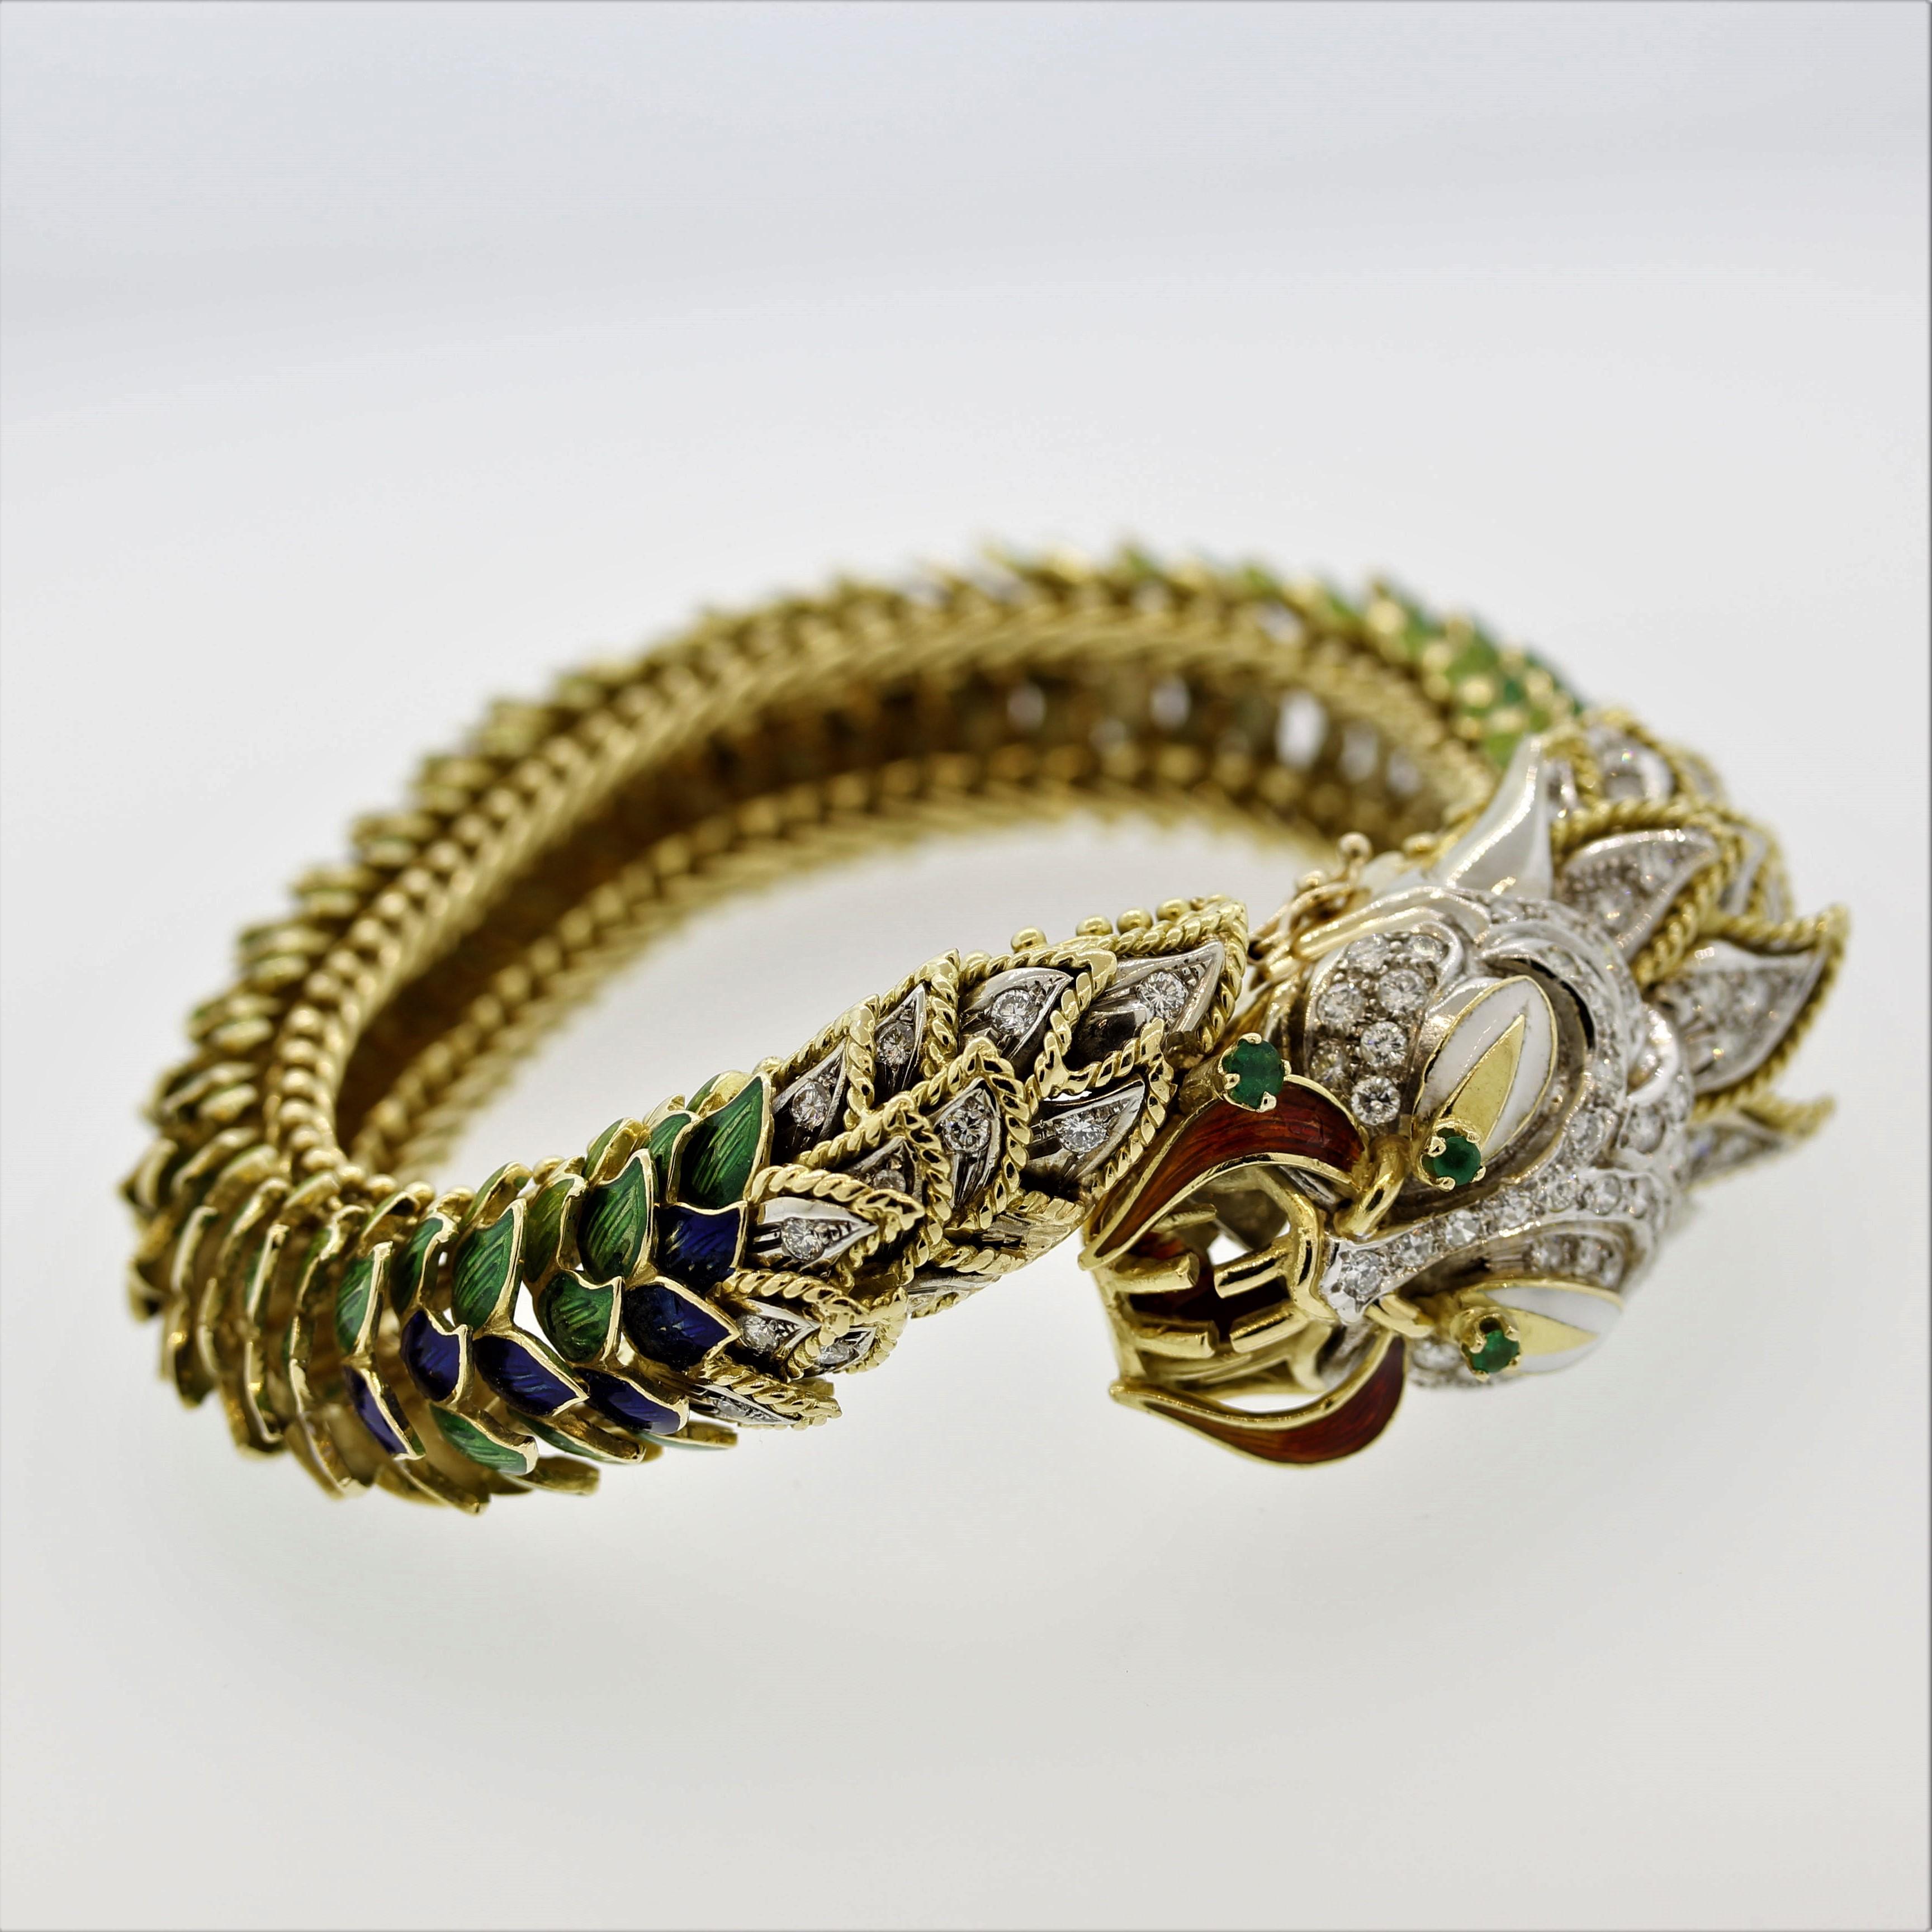 Ein außergewöhnliches und außergewöhnlich detailliertes Drachenarmband. Das Armband wurde von den feinsten Goldschmieden in Italien hergestellt. Die 18-karätige Goldarmierung des Drachens wurde so konzipiert, dass sich jede Schuppe von selbst biegen